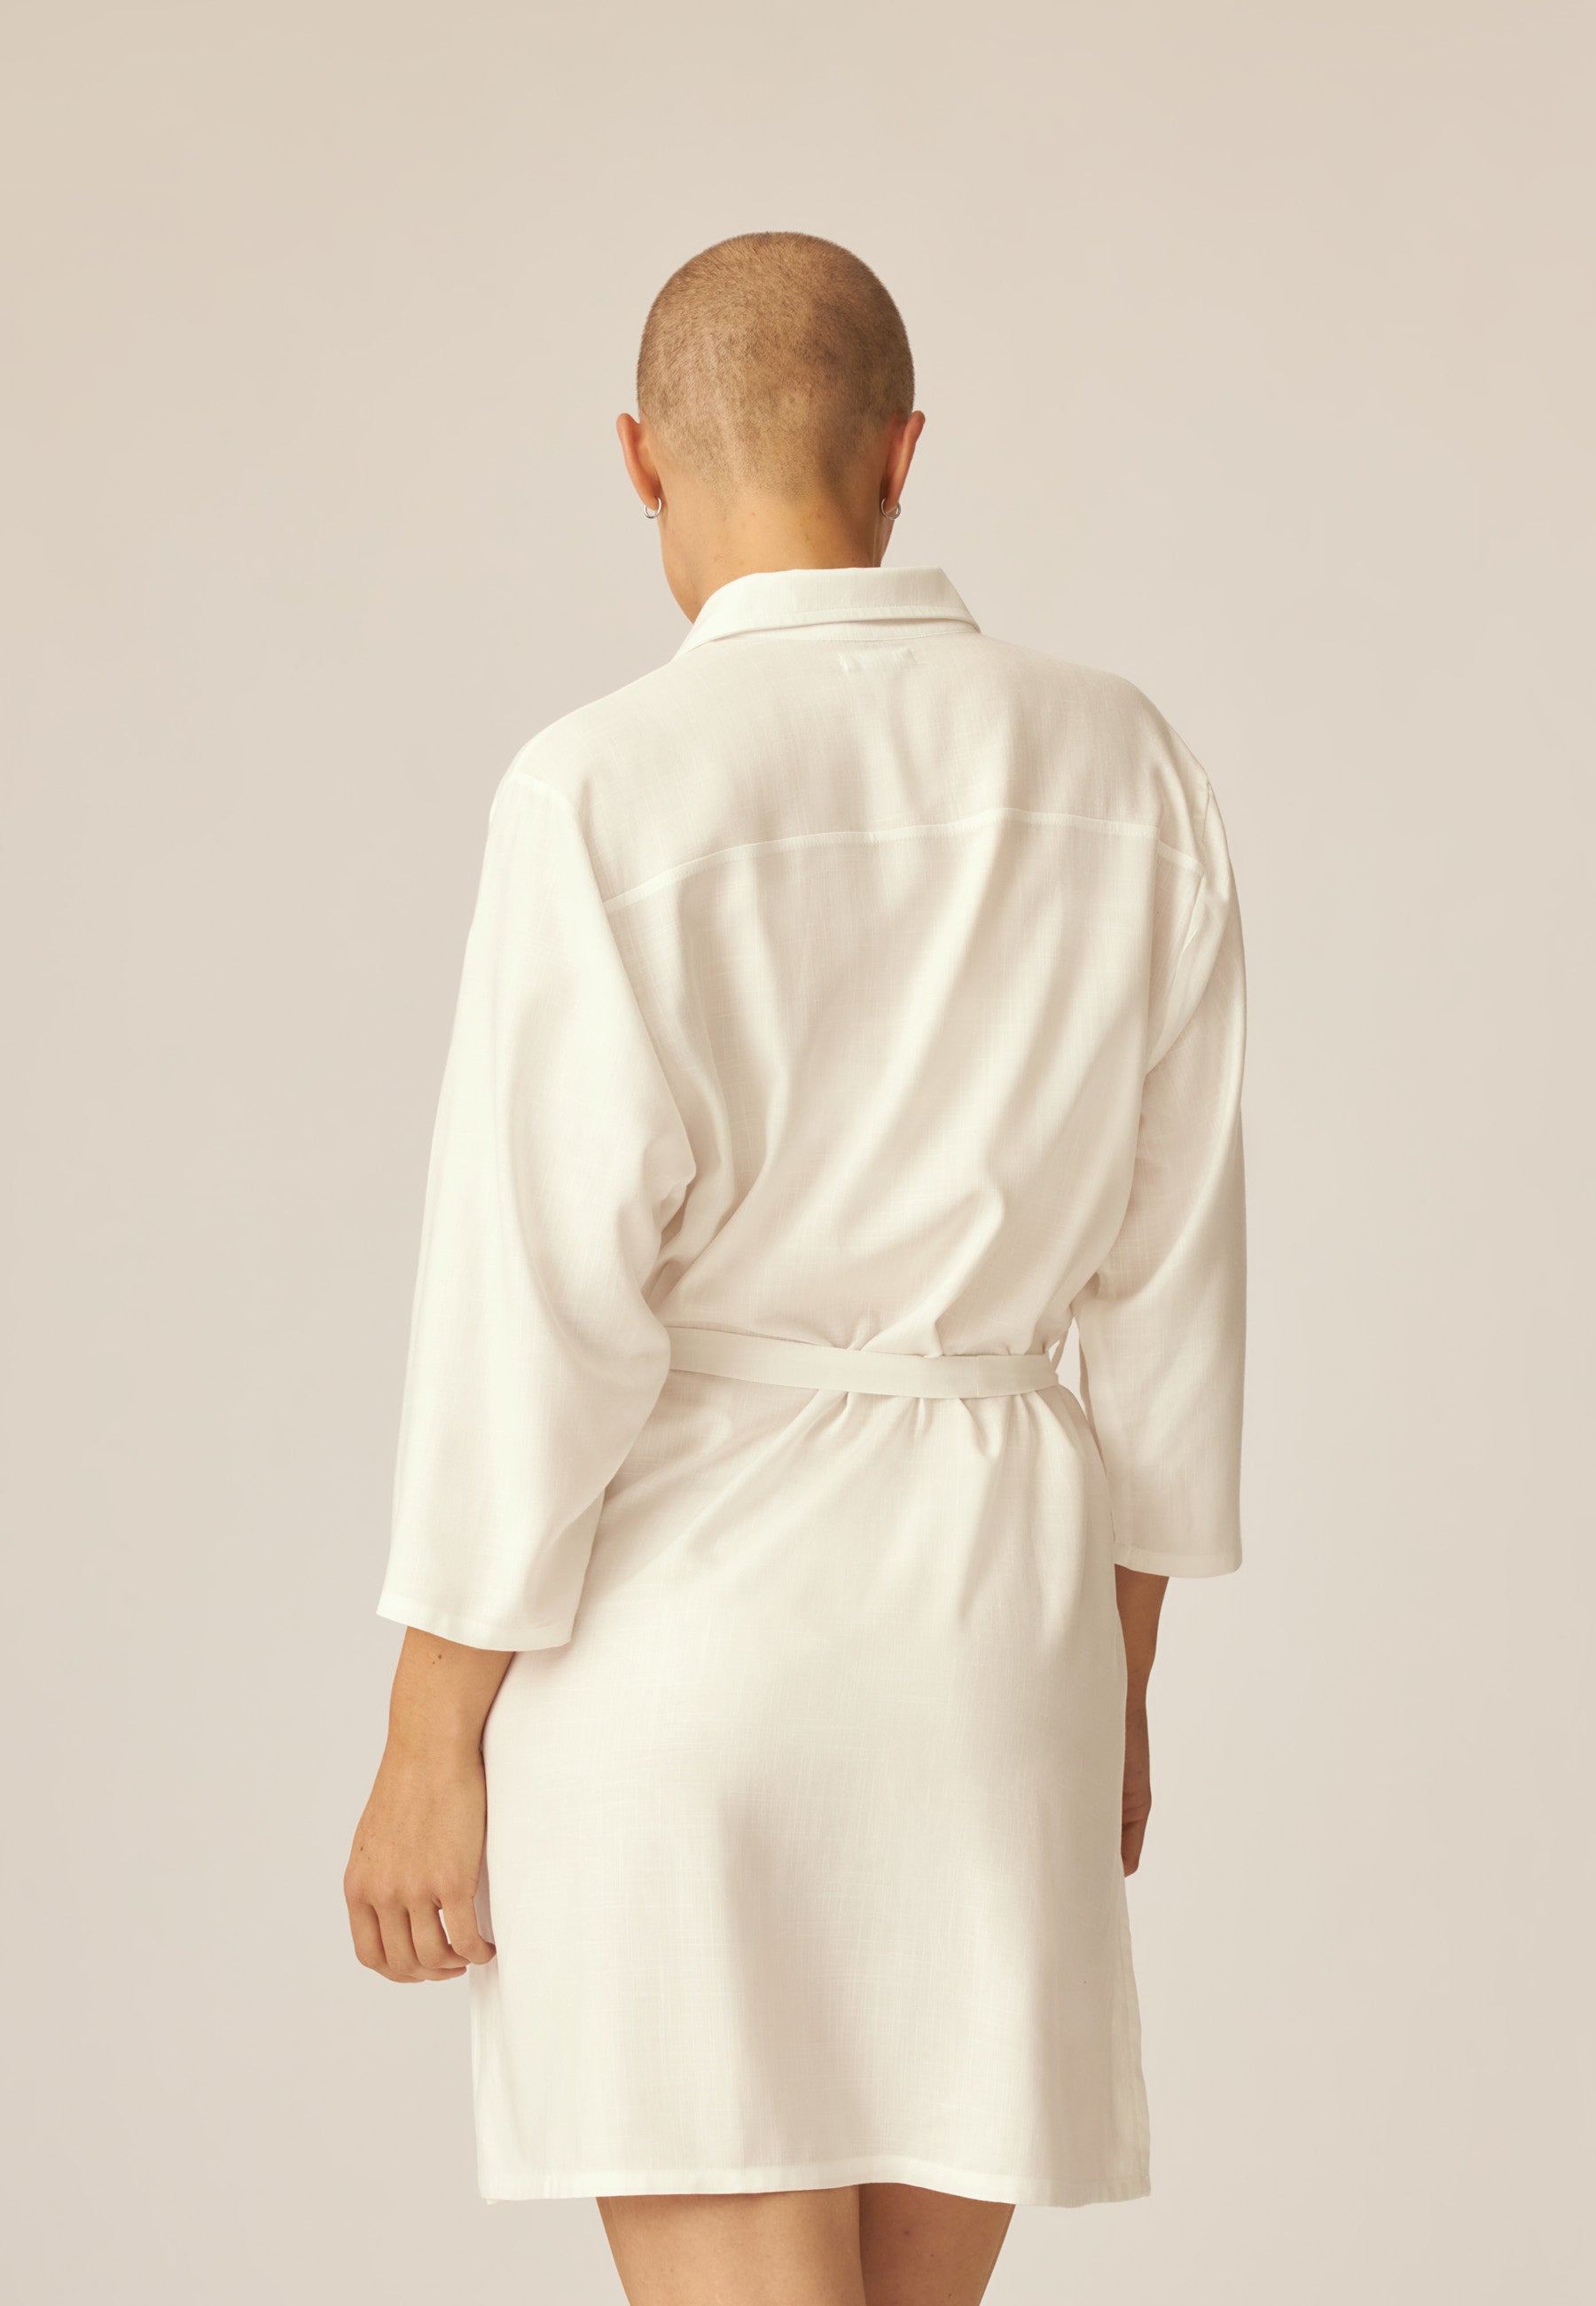 Kimono de playa - Blanco crudo